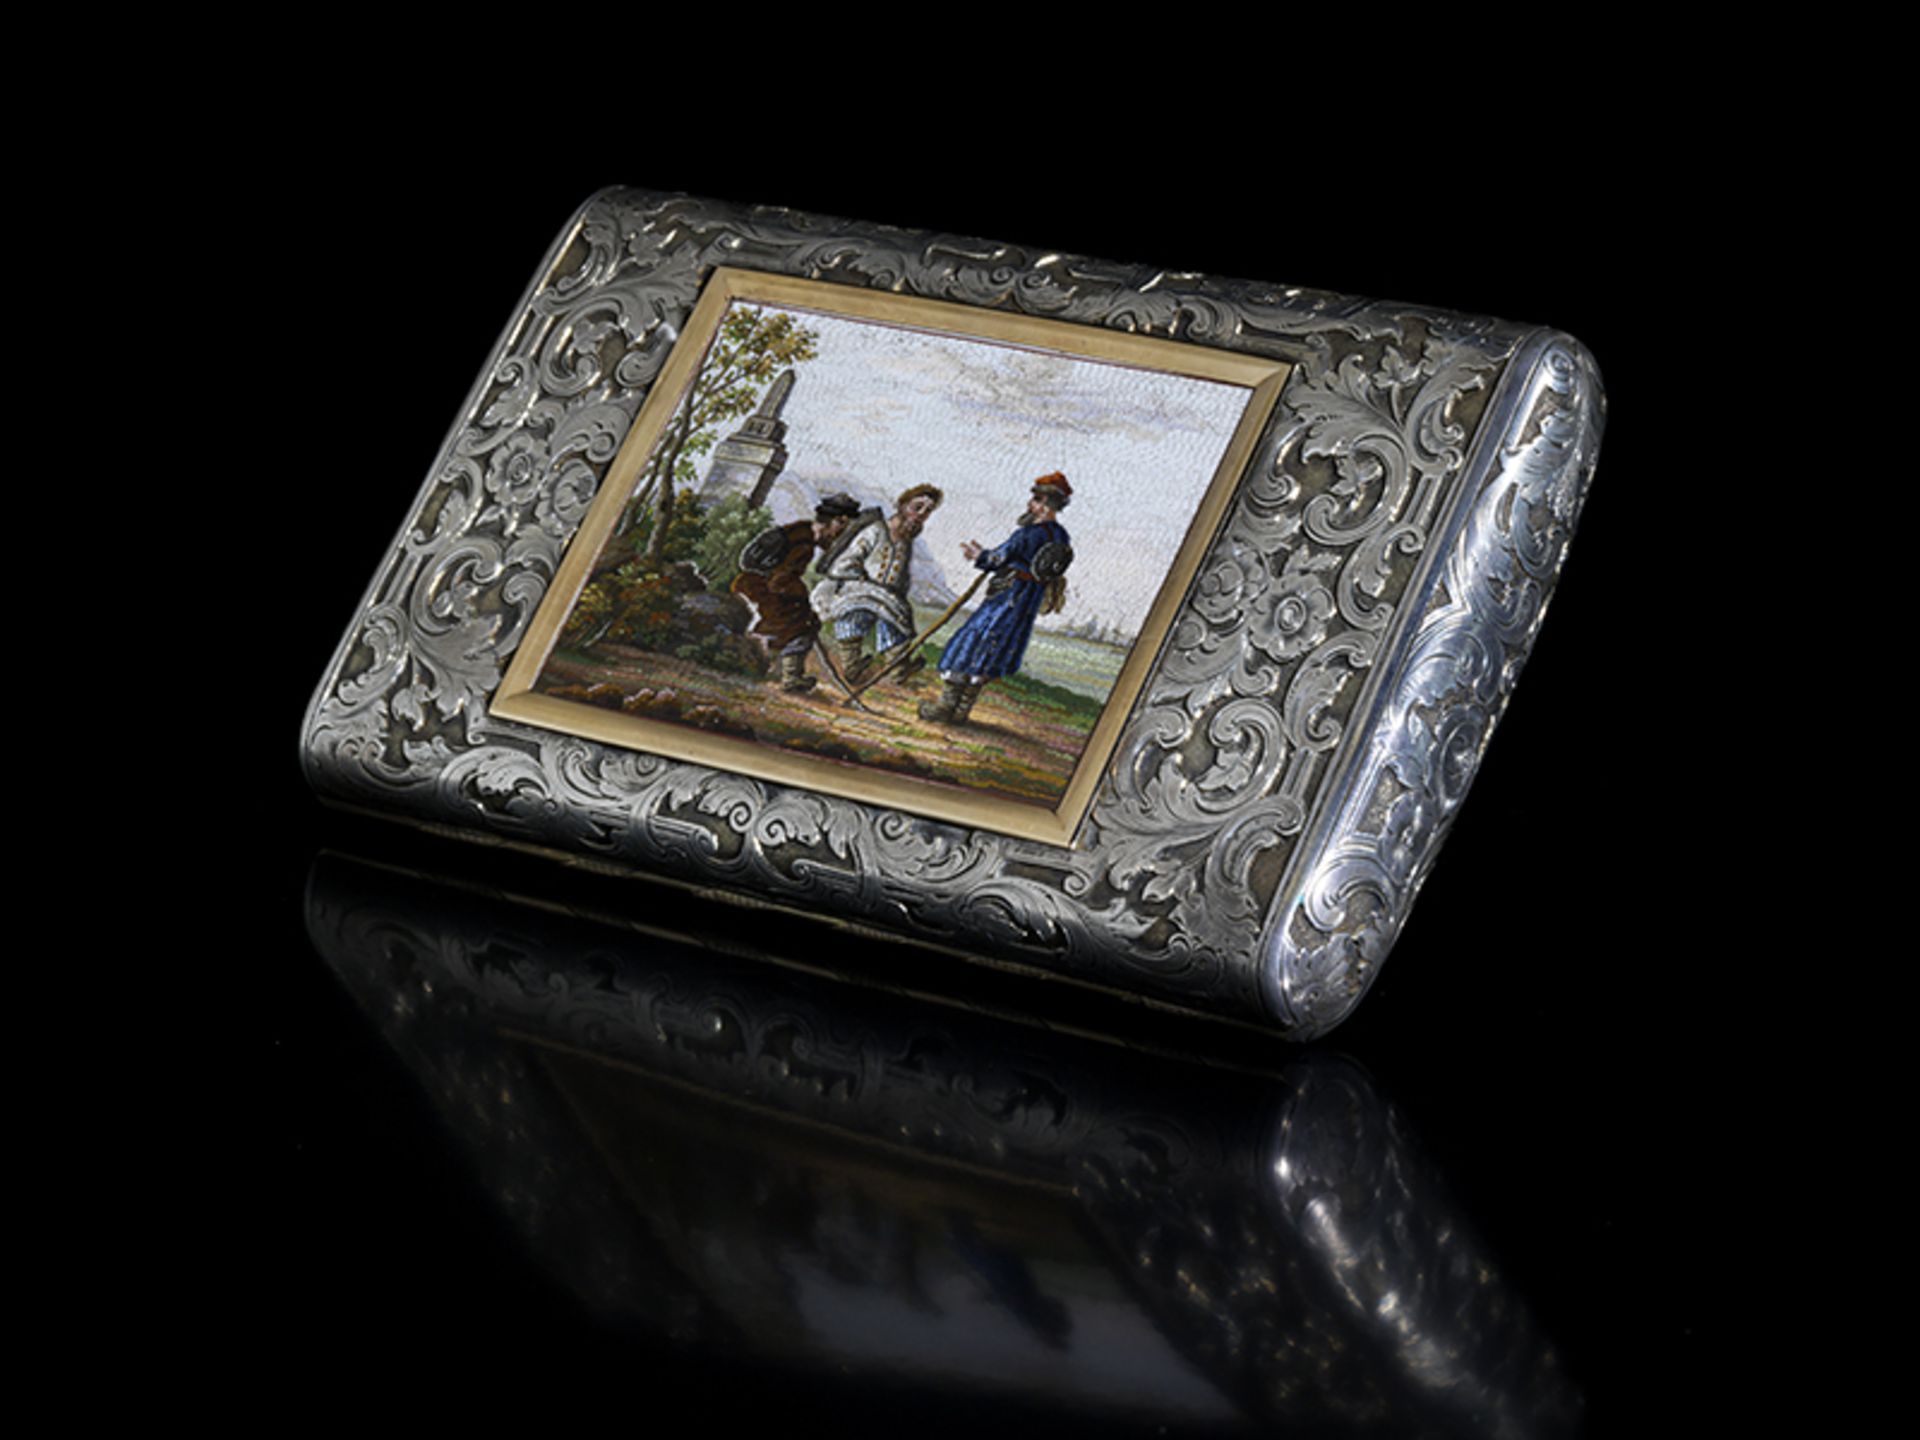 Sankt Petersburger Zigarrenetui 13 x 8 cm. Gewicht: 318 g. Sankt Petersburger Beschau,